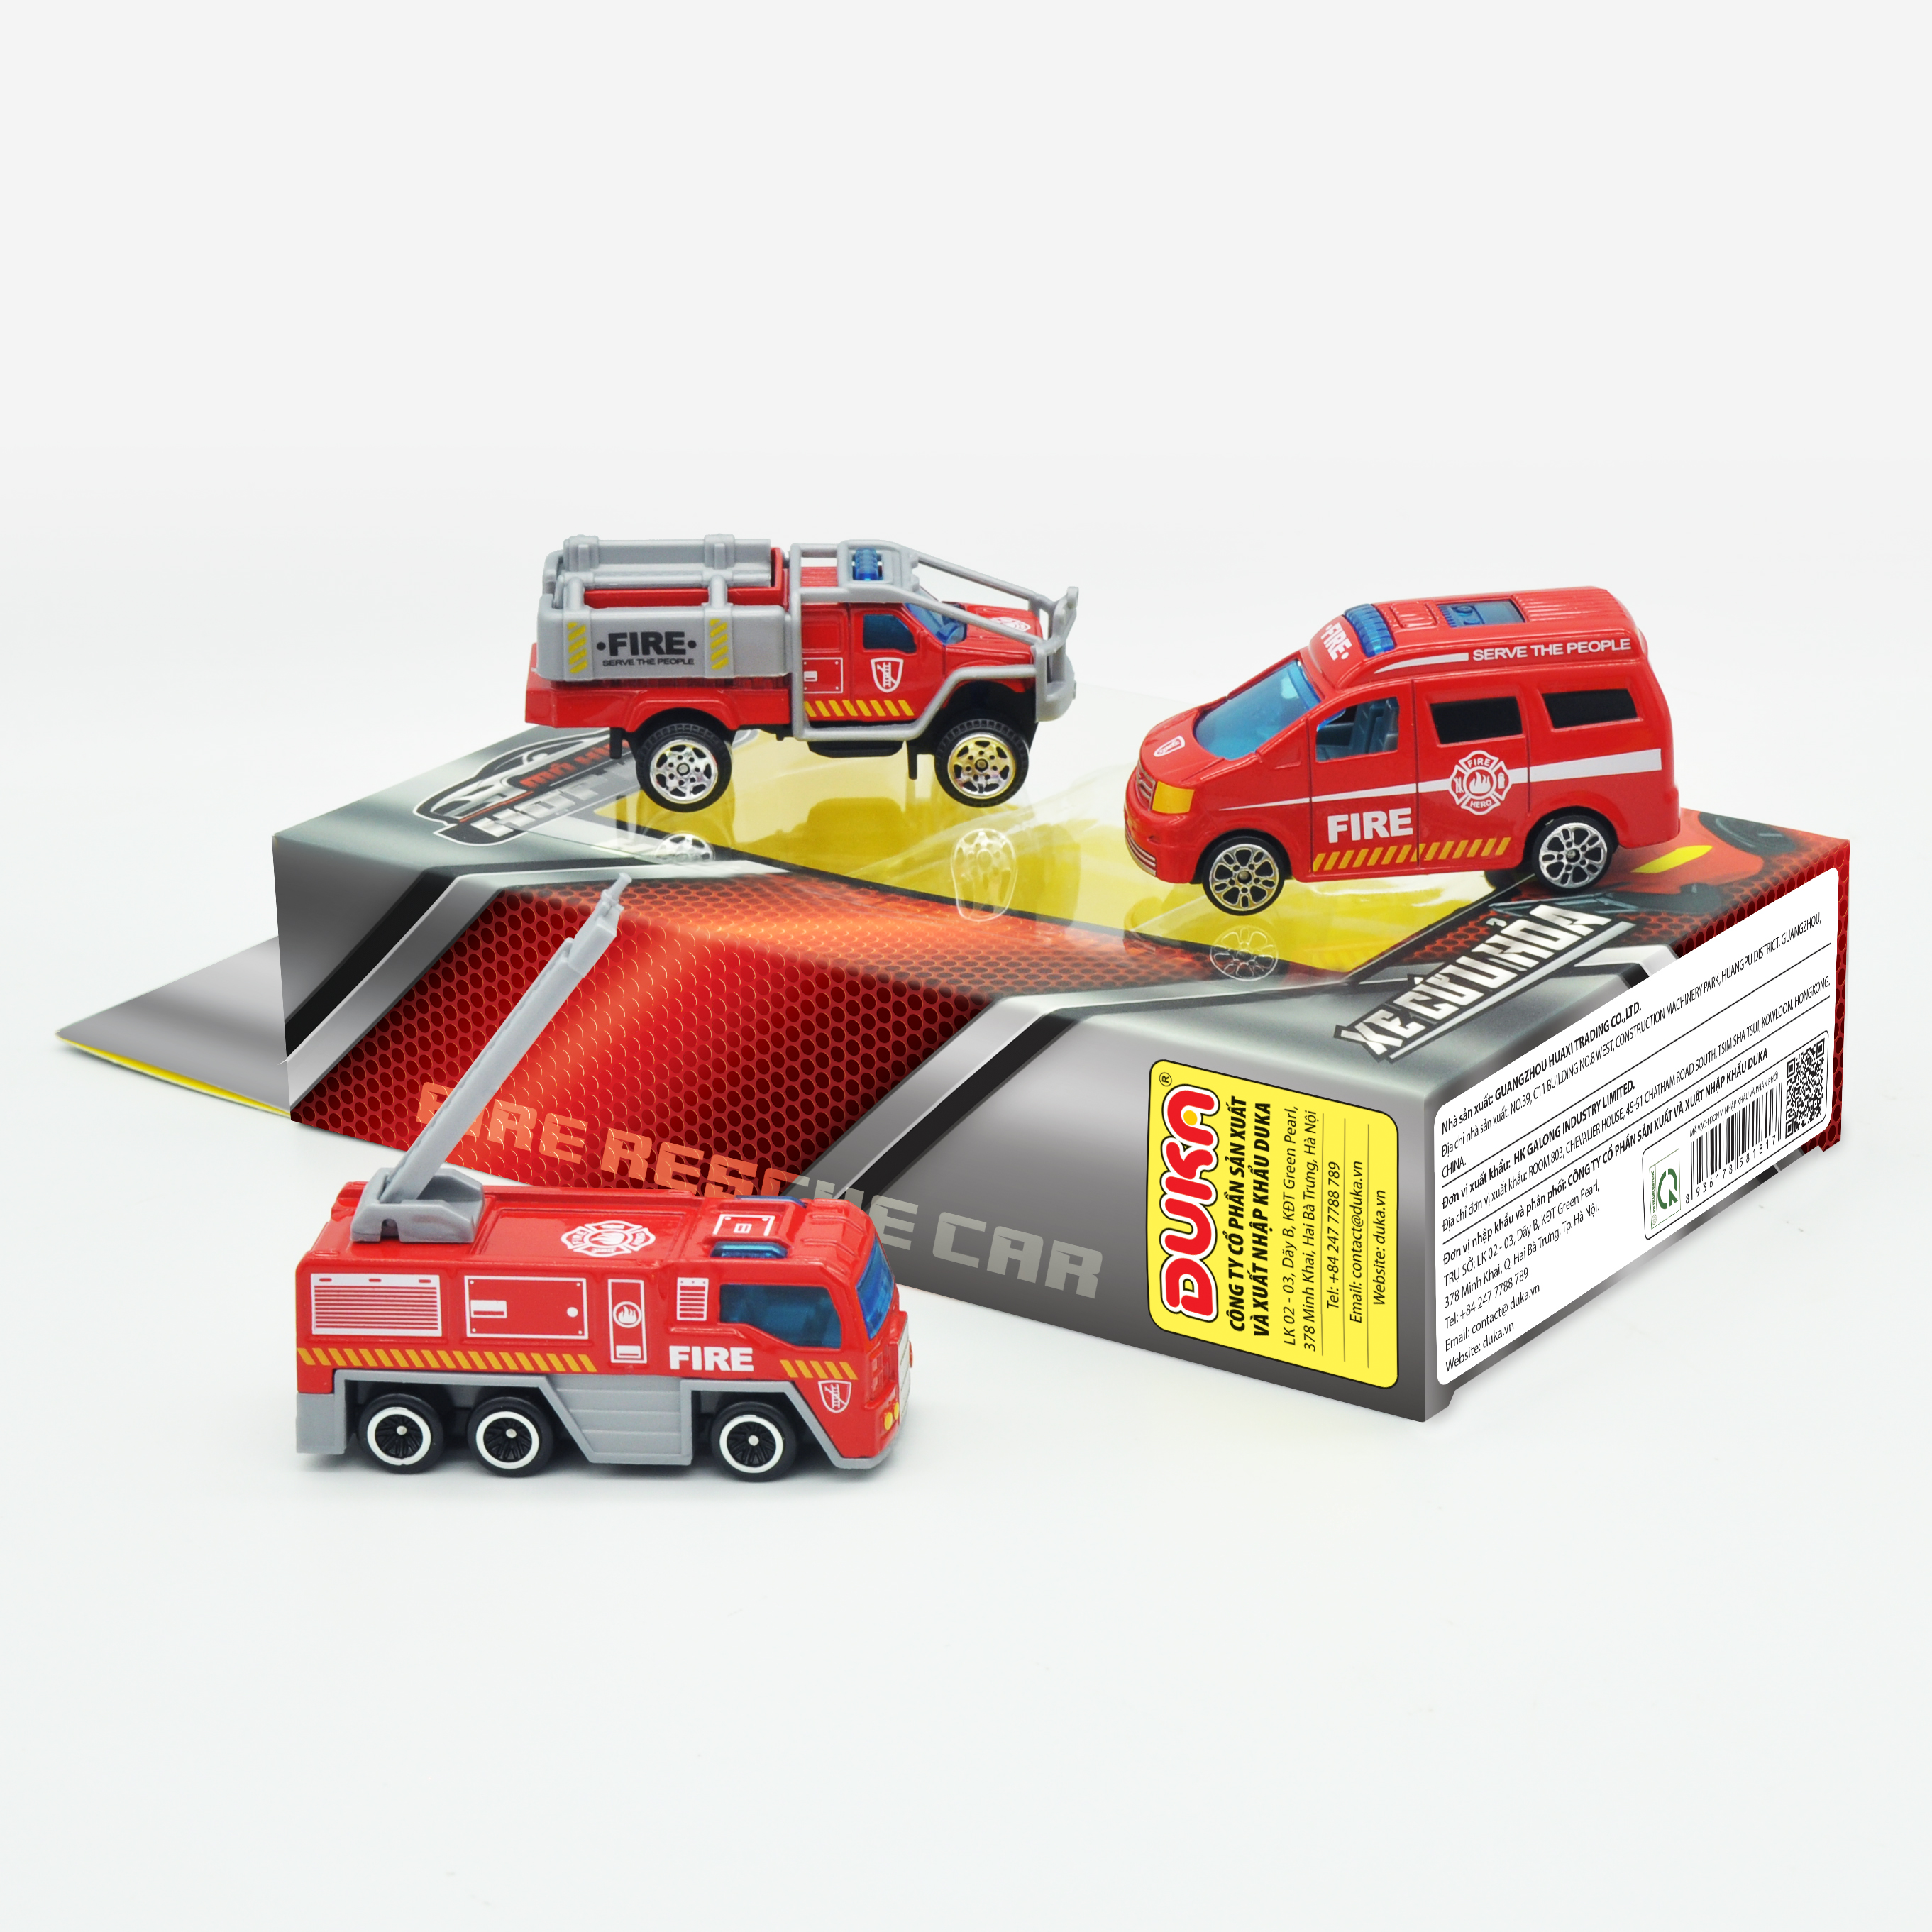 Đồ chơi trẻ em: Xe ô tô mô hình hợp kim, xe cứu hỏa DK 81105. Kiểu dáng, mẫu xe, màu sắc ngẫu nhiên.